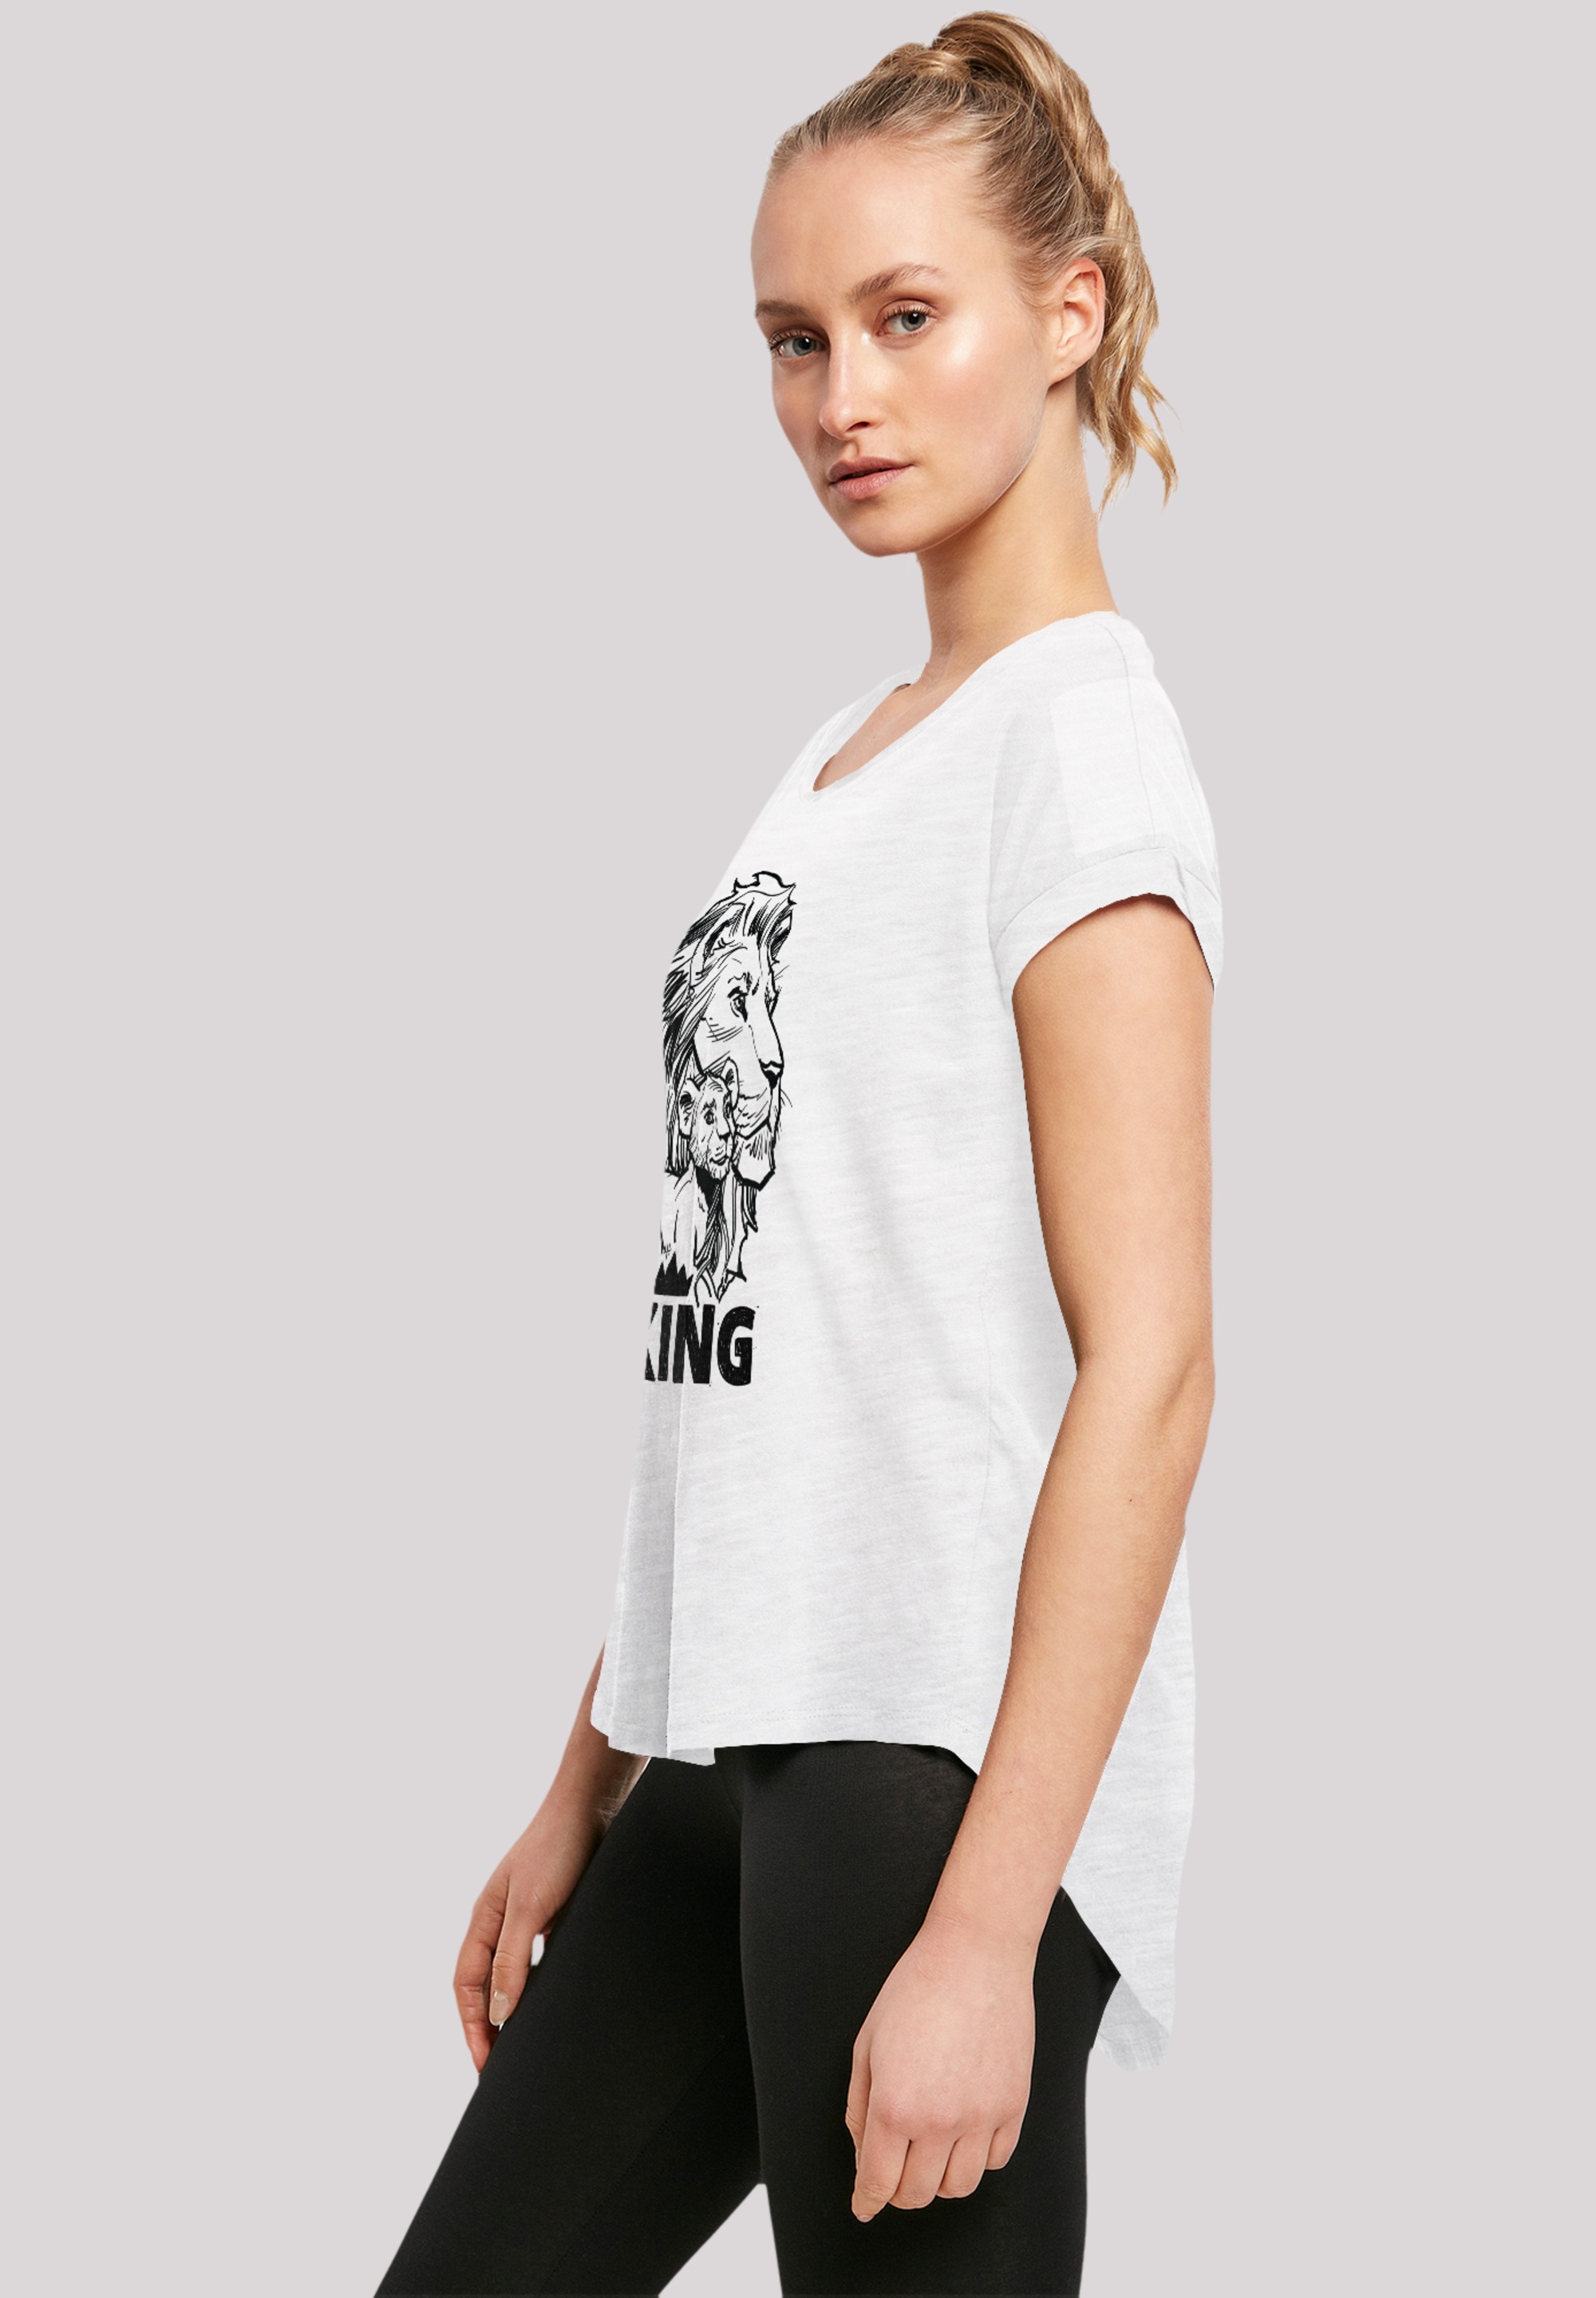 Löwen König F4NT4STIC bestellen | white«, Qualität der Together BAUR Premium T-Shirt für »Disney